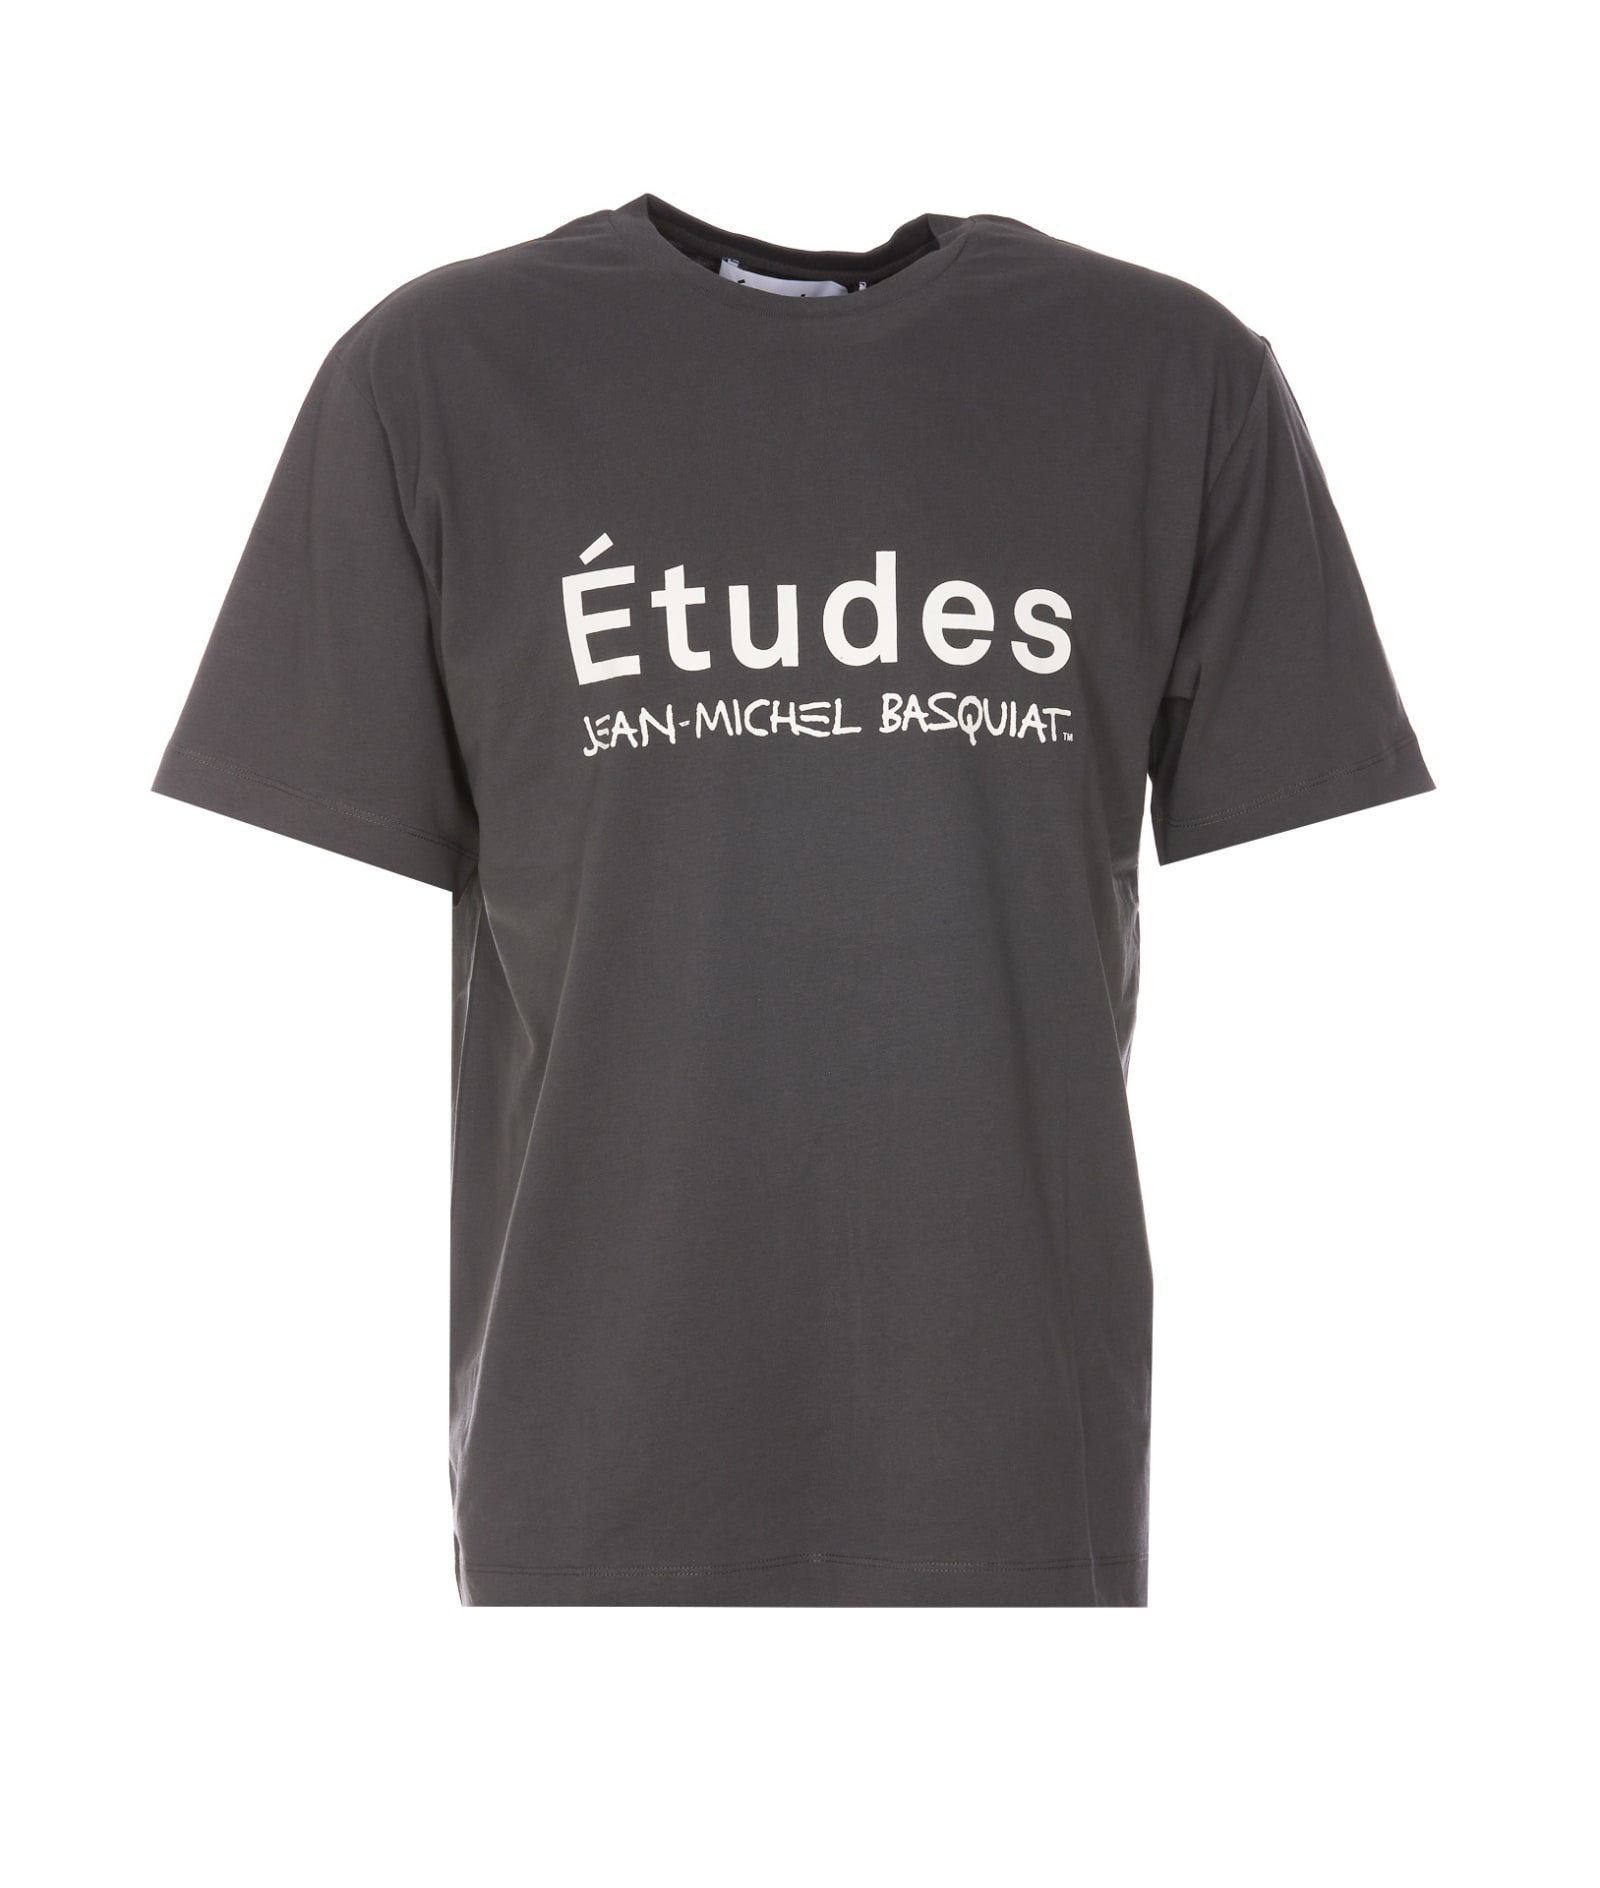 Études Wonder Etudes Jean Michel Basquiat T-shirt